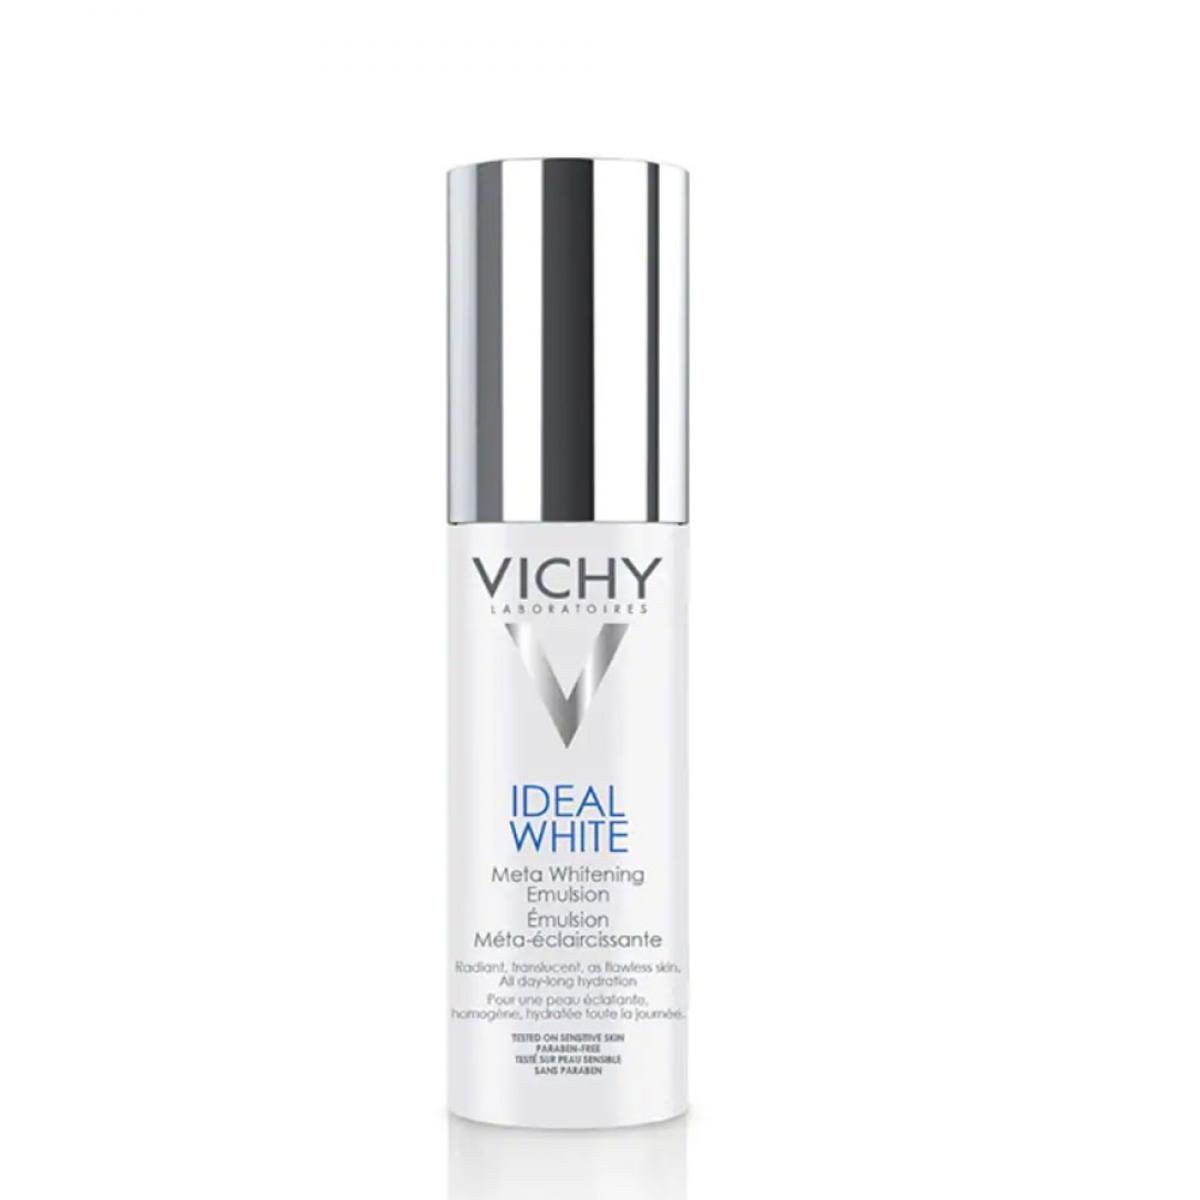 امولسیون روشن کننده پوست Ideal White حجم 50 میل - Vichy Ideal White Whitening Emulsion 50ml